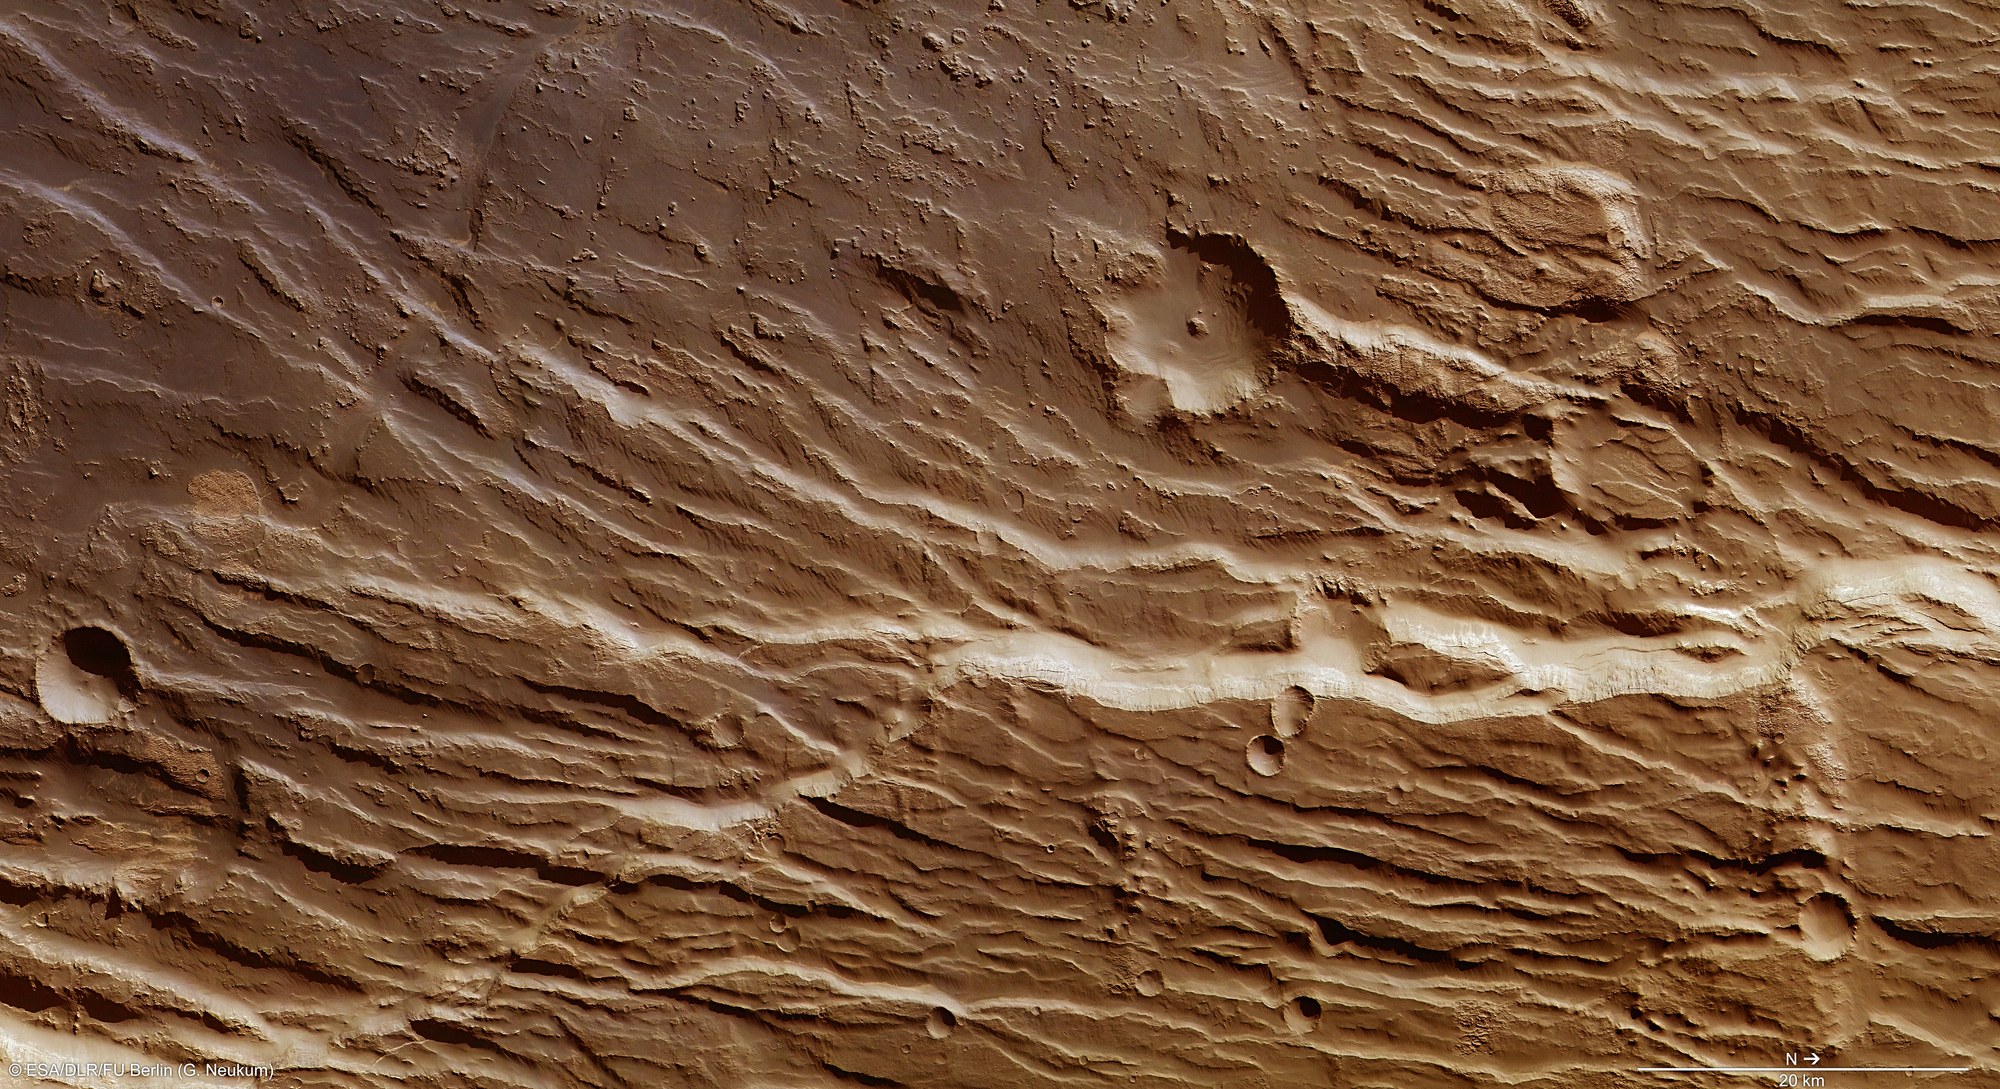 Part of the Claritas Rupes escarpment on Mars